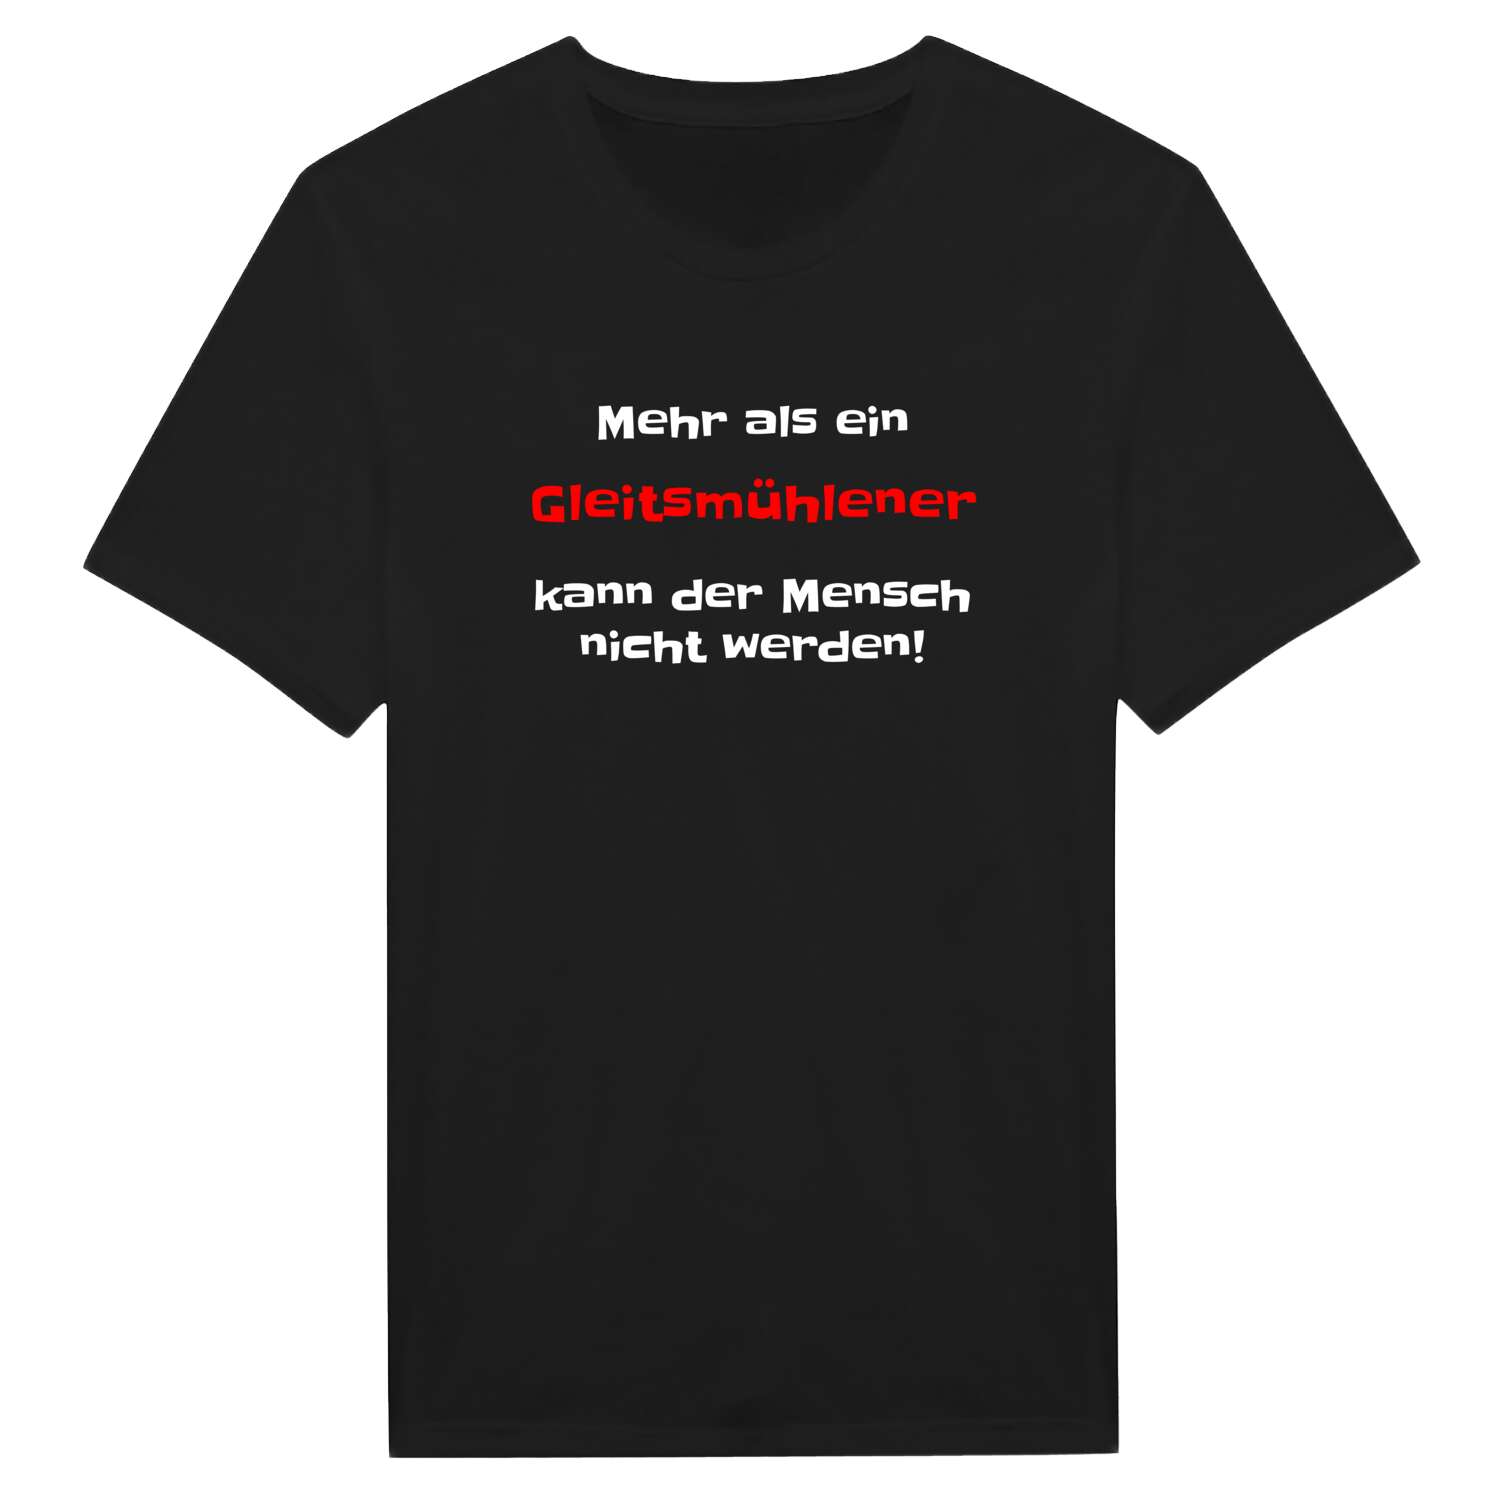 Gleitsmühle T-Shirt »Mehr als ein«